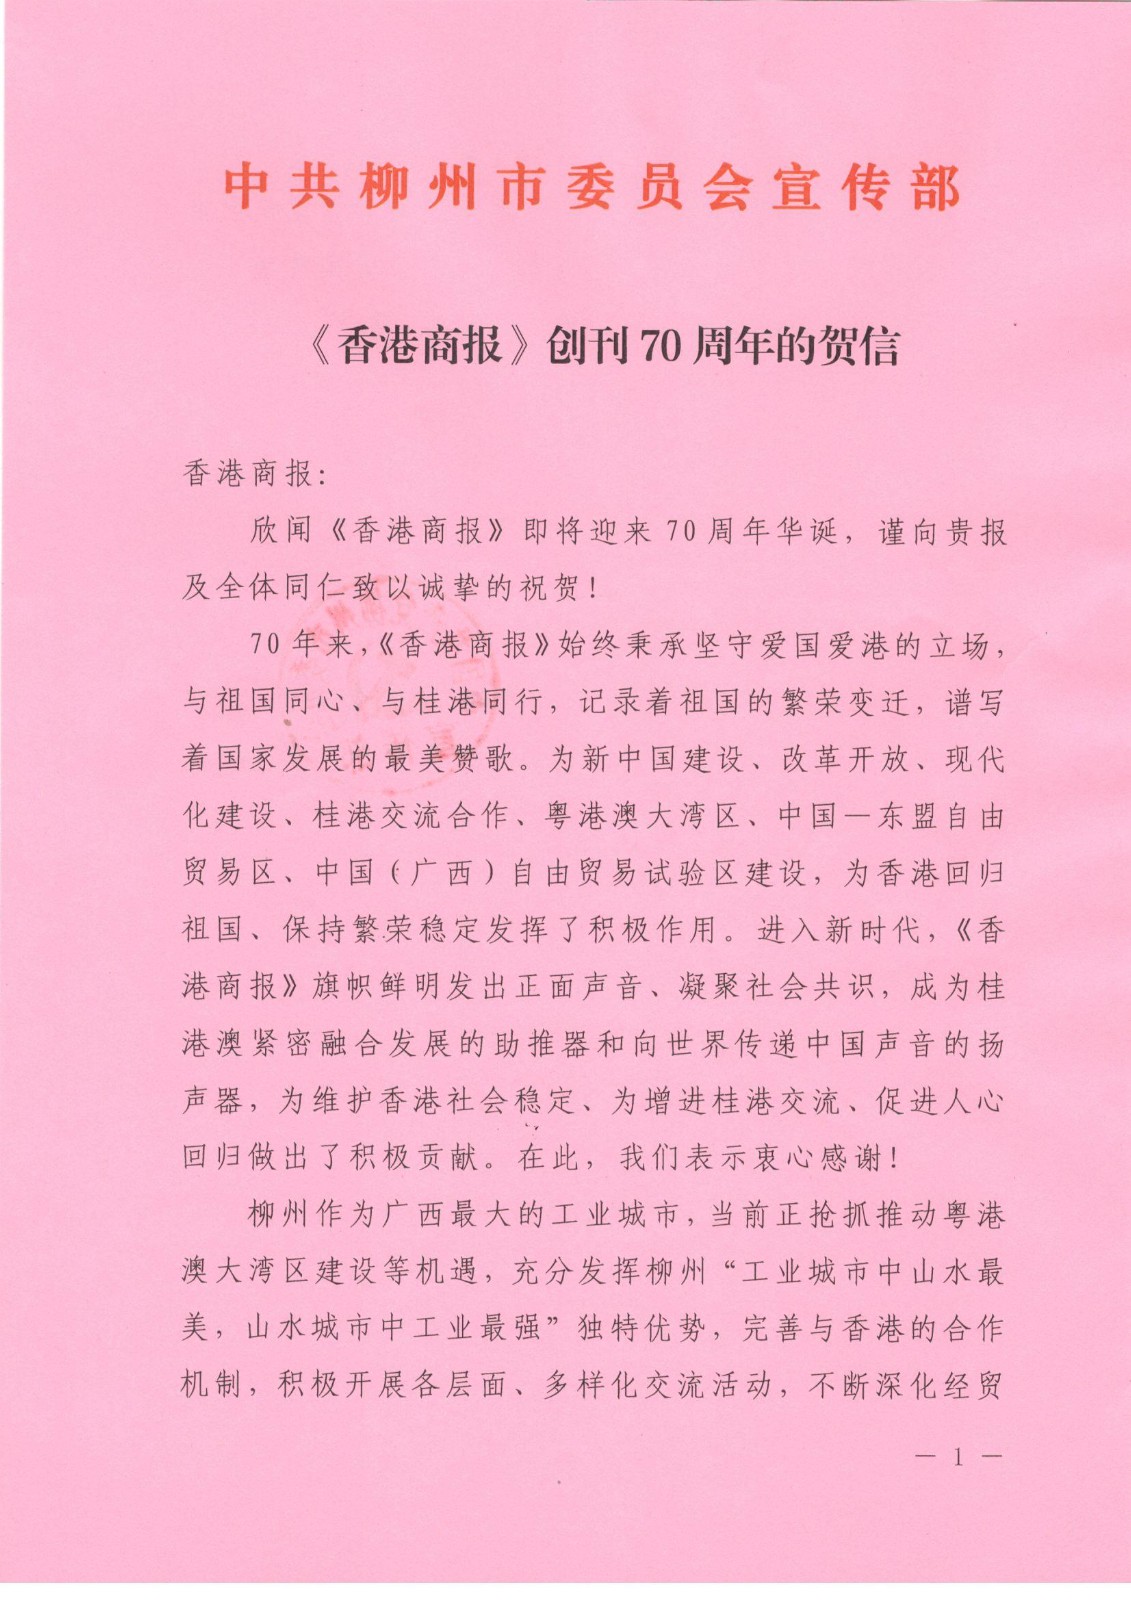 中共柳州市委员会宣传部_页面_1.jpg